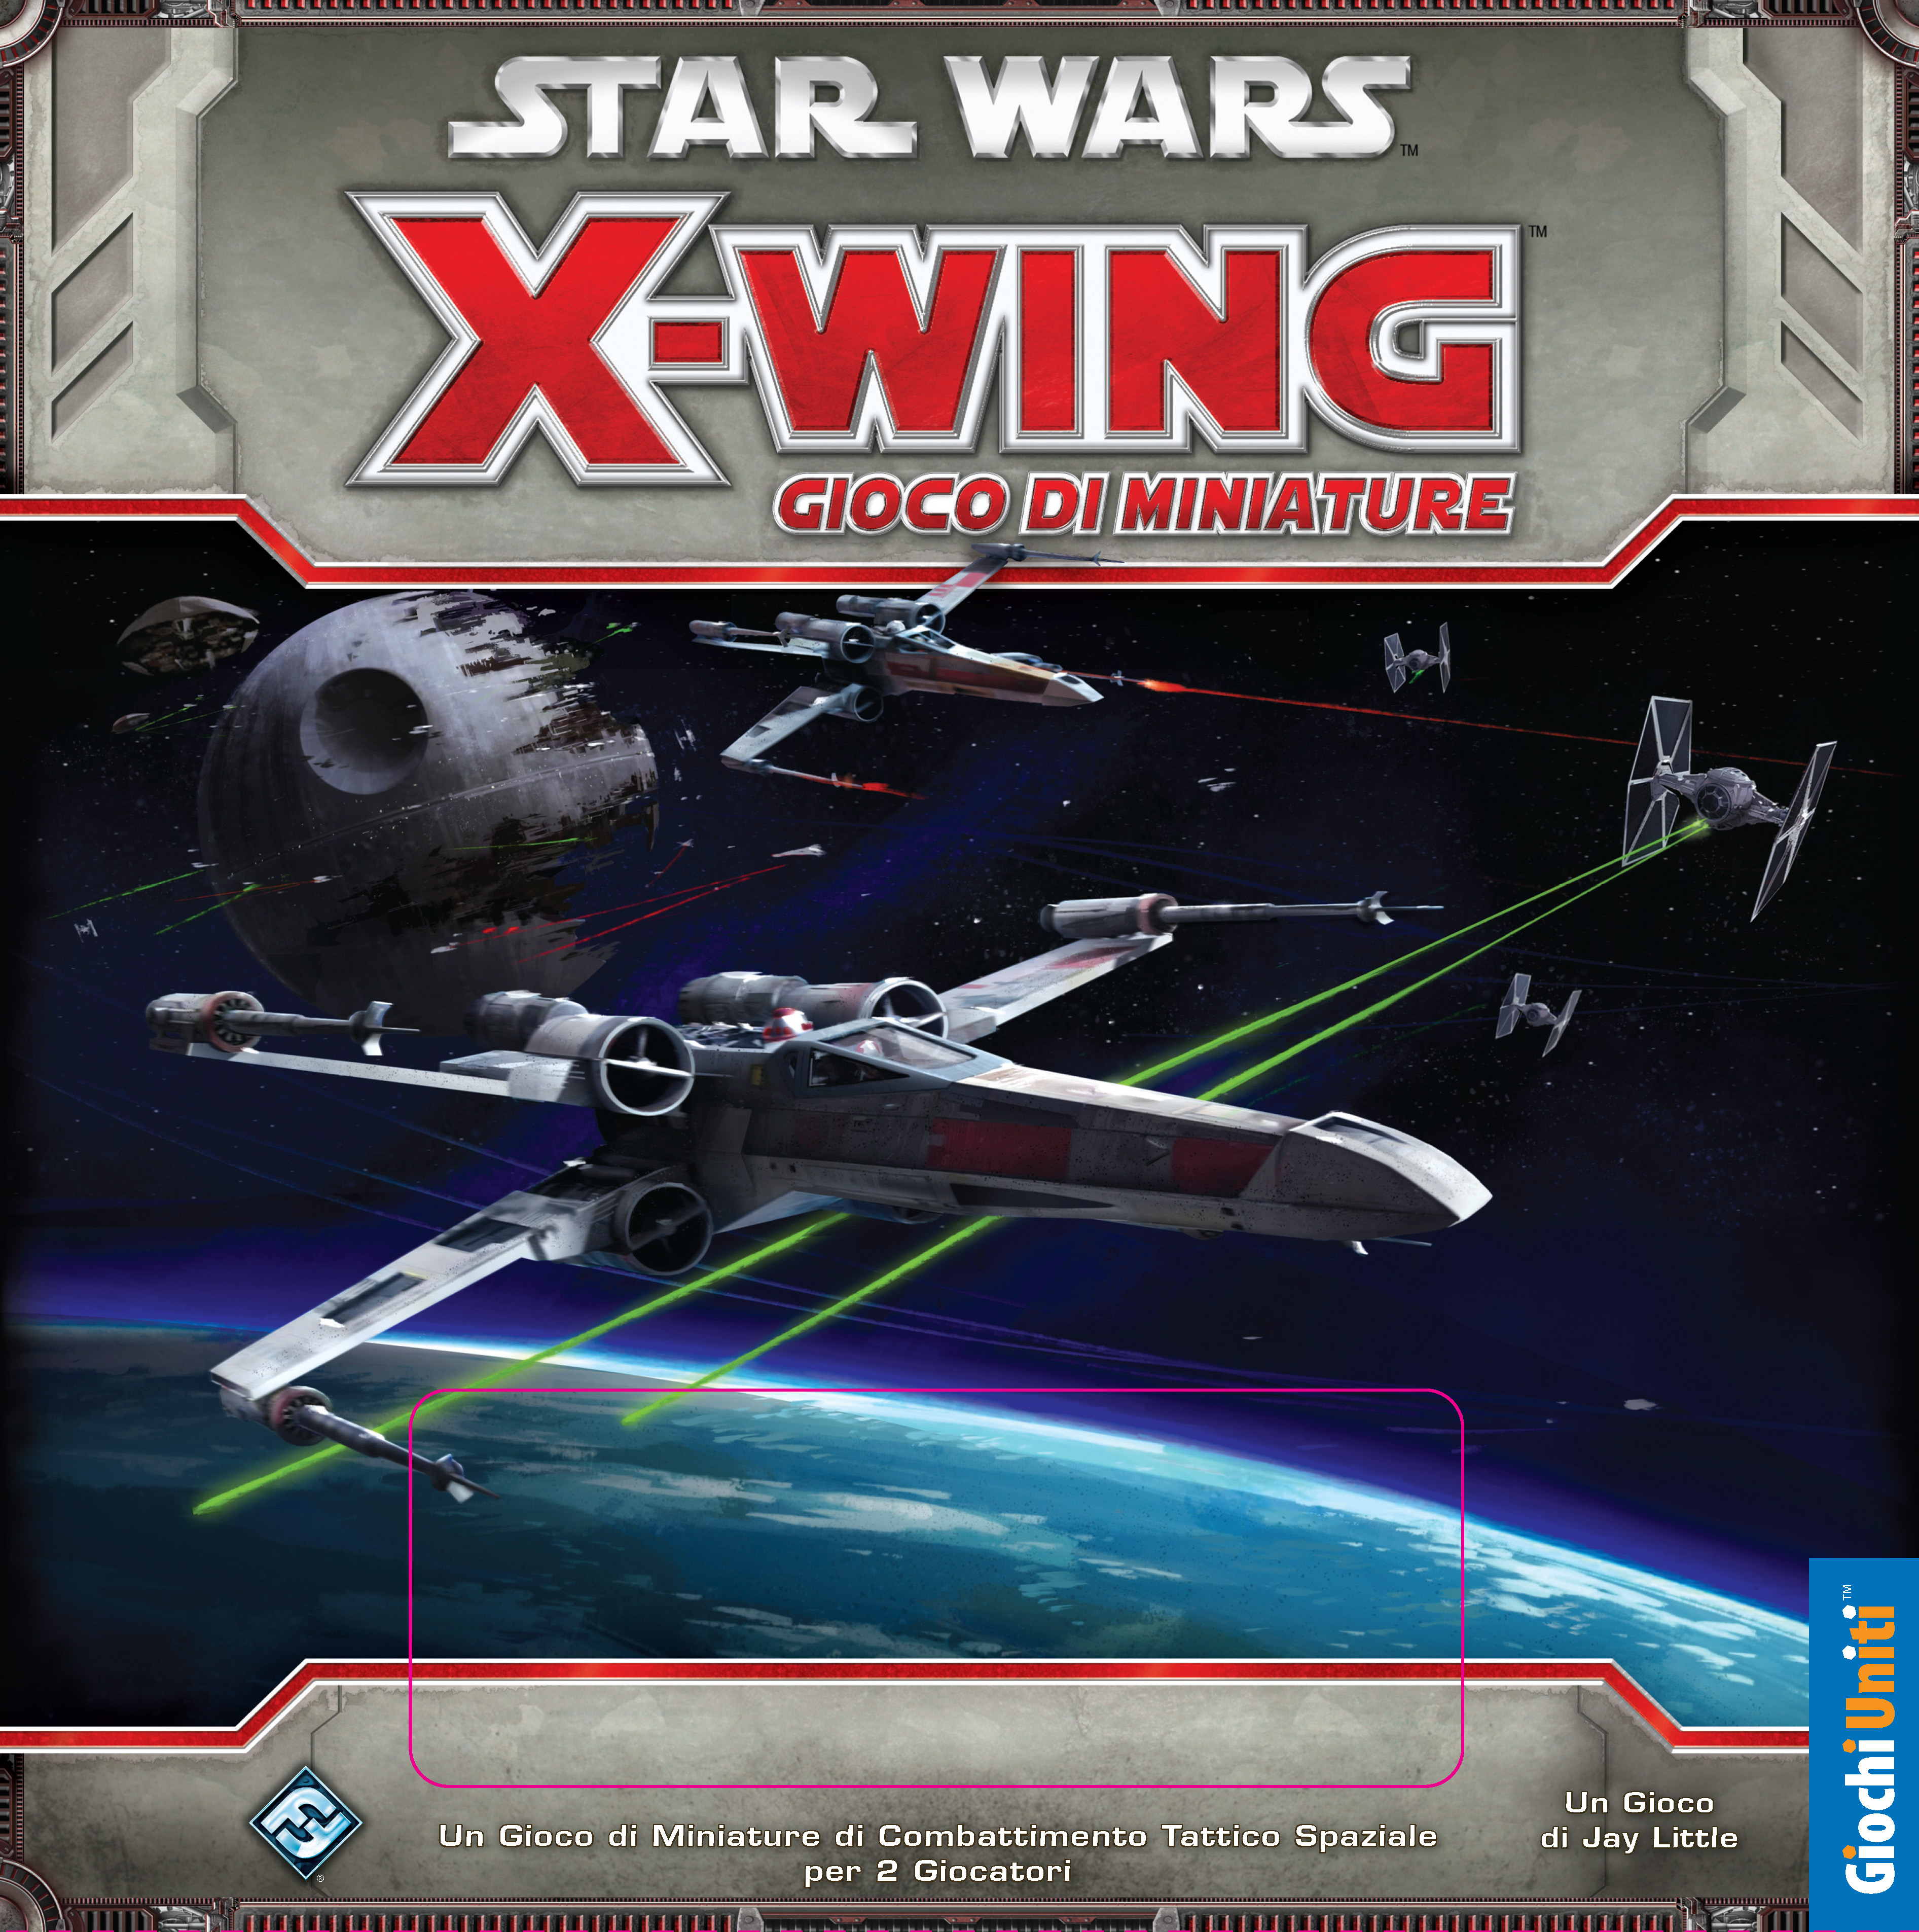 Cartoomics 2015, Giochi Uniti presenta Star Wars: X-Wing